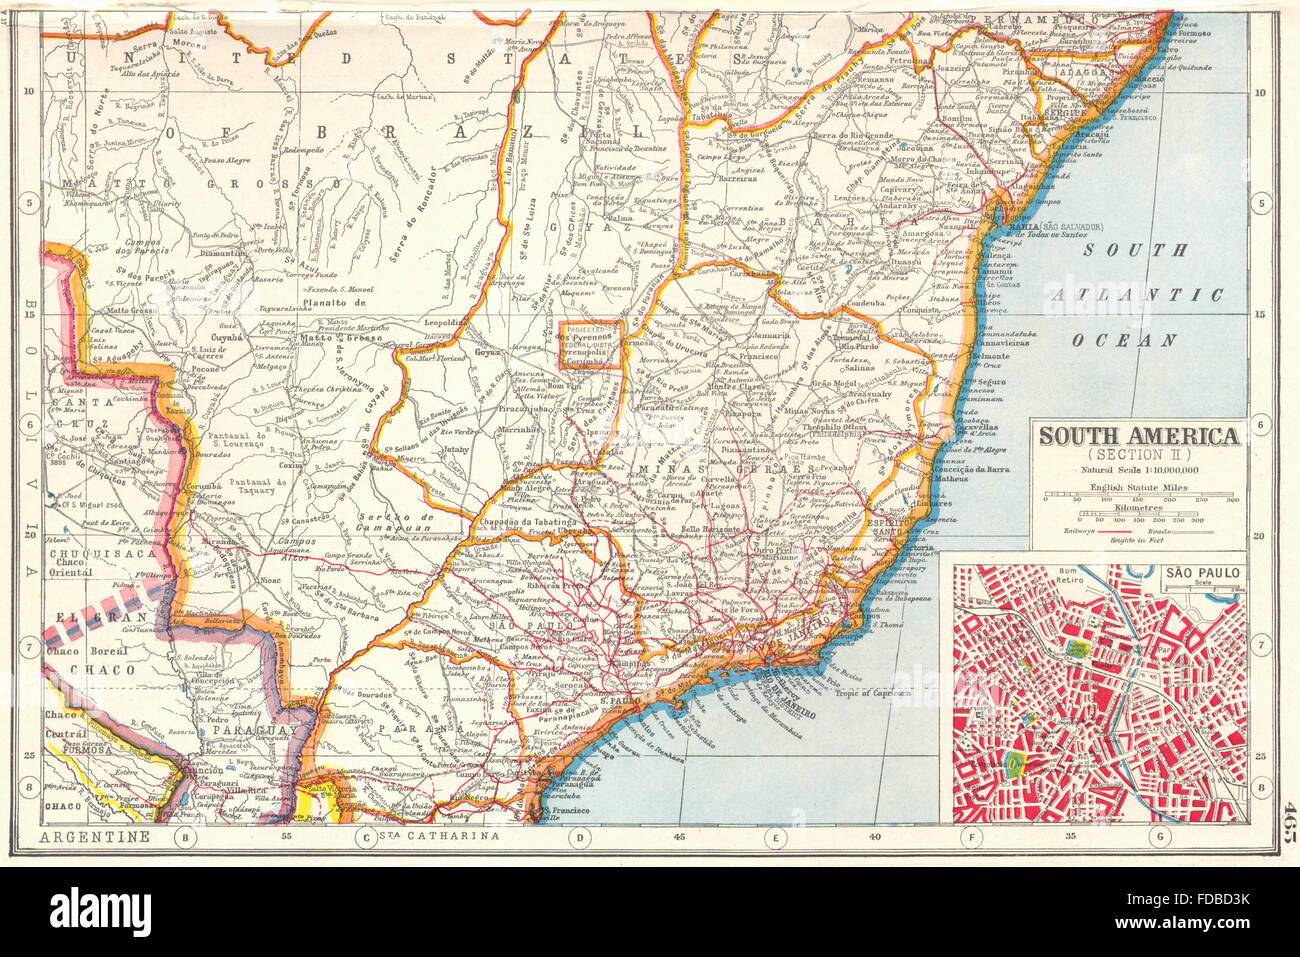 Sud du Brésil : Bahia Minas Geraes Parana Espirito Santo.Inset Sao Paulo, 1920 map Banque D'Images